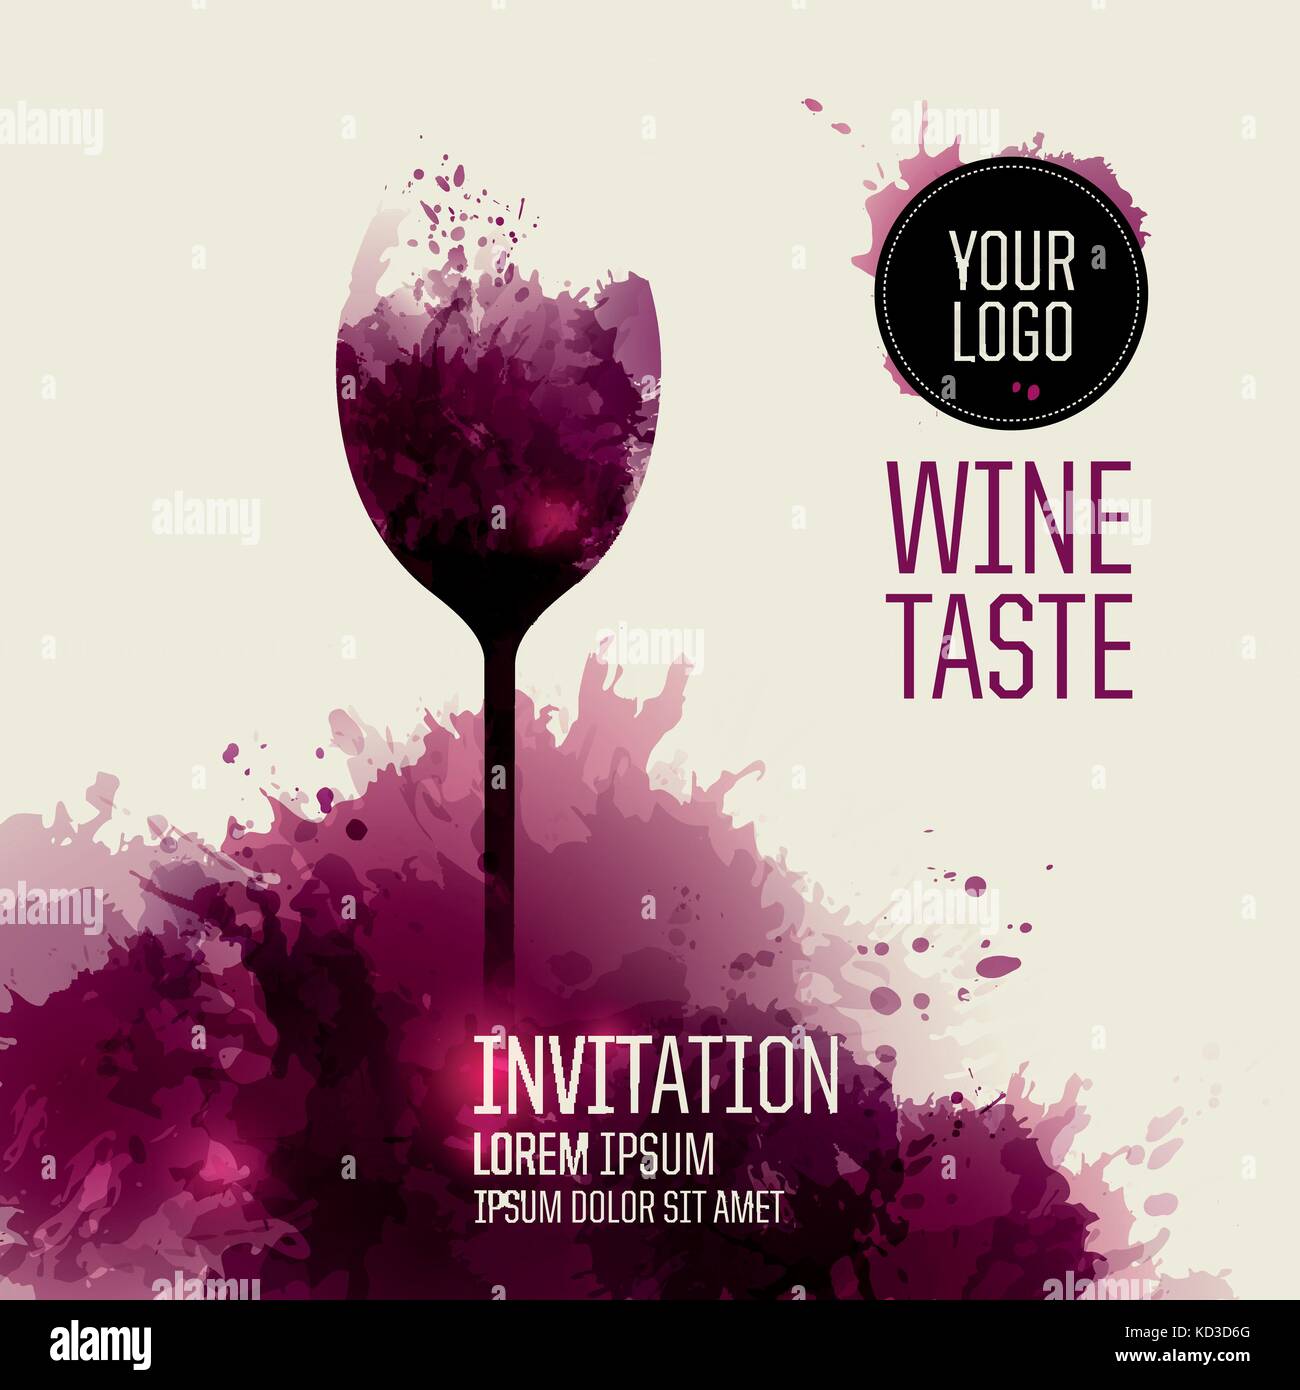 Einladung Vorlage für Wein Event oder Party. Stock Vektor